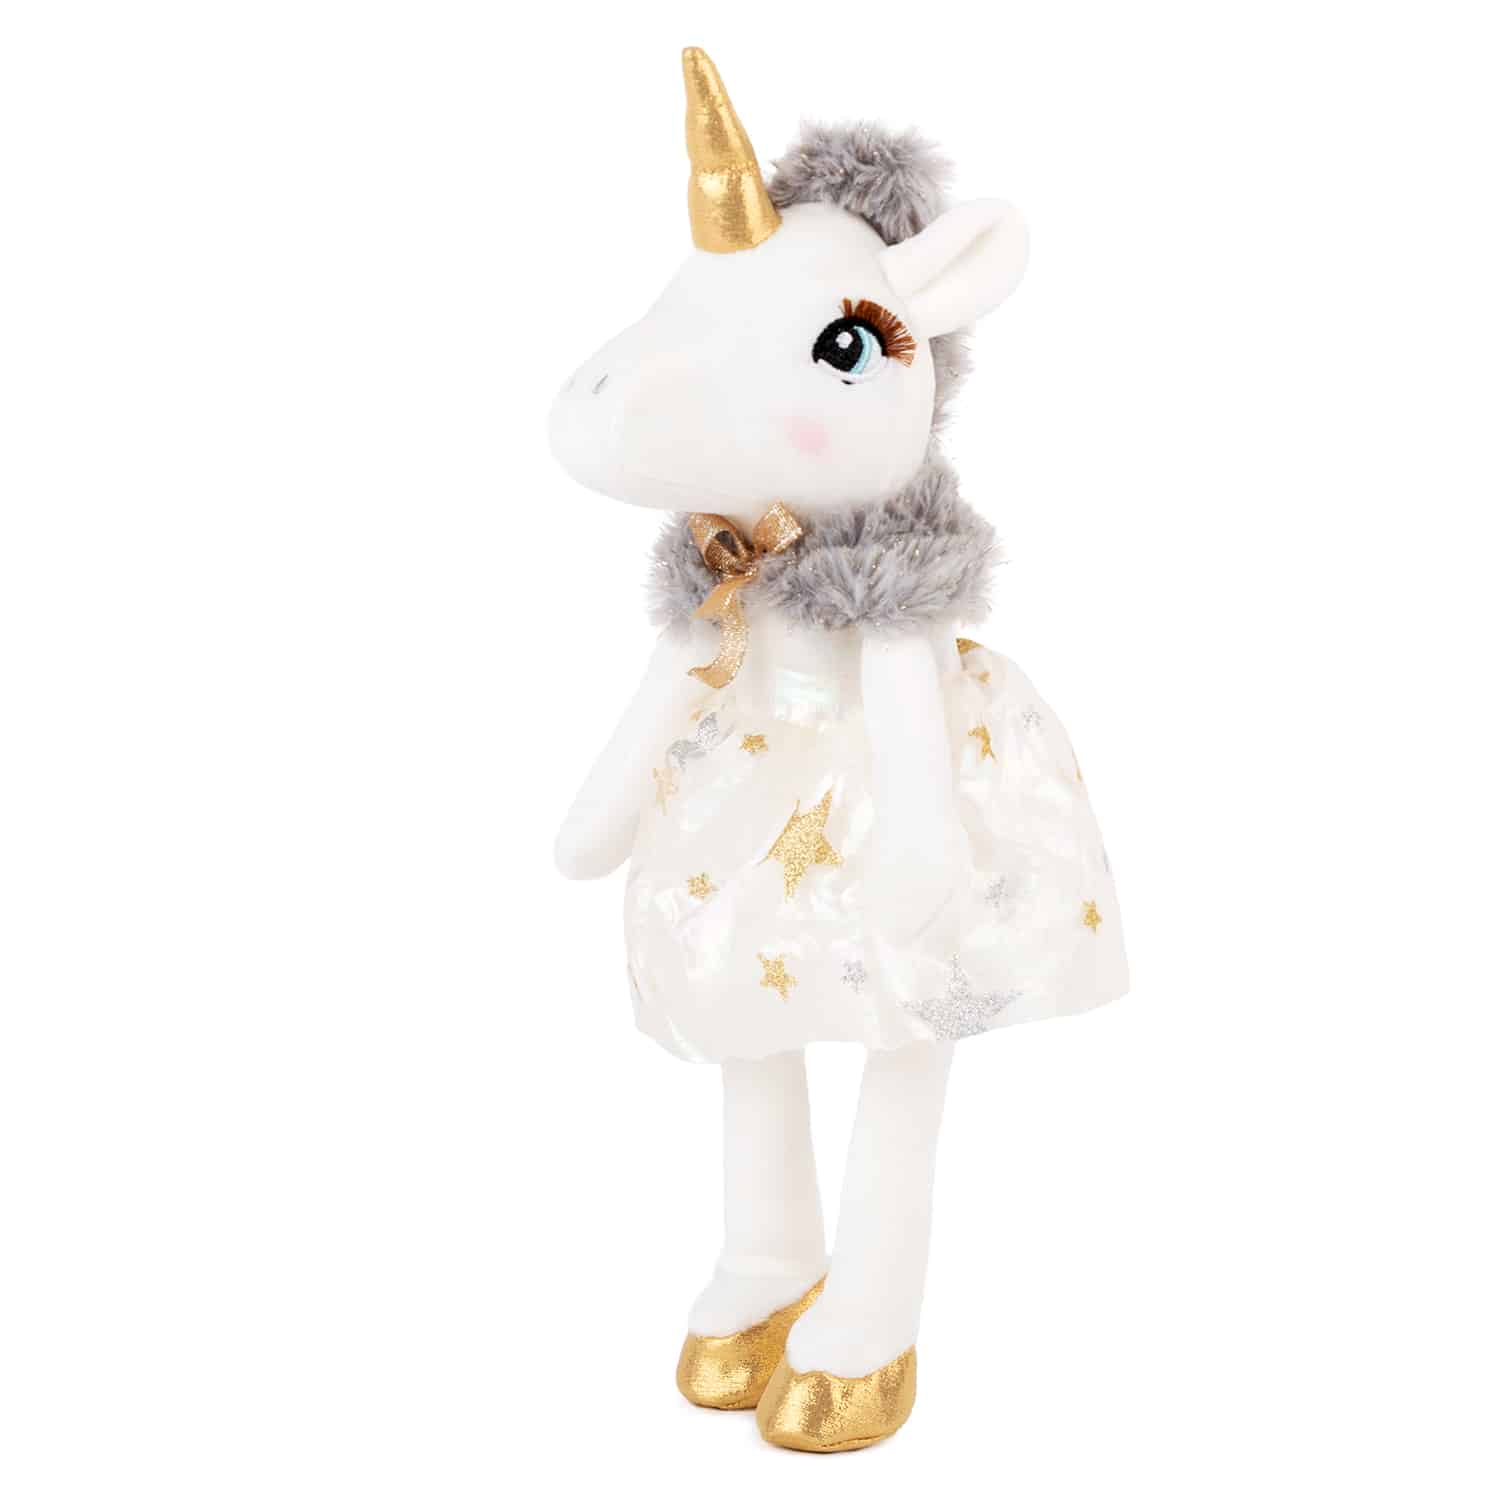 Unicorn with glitter dress